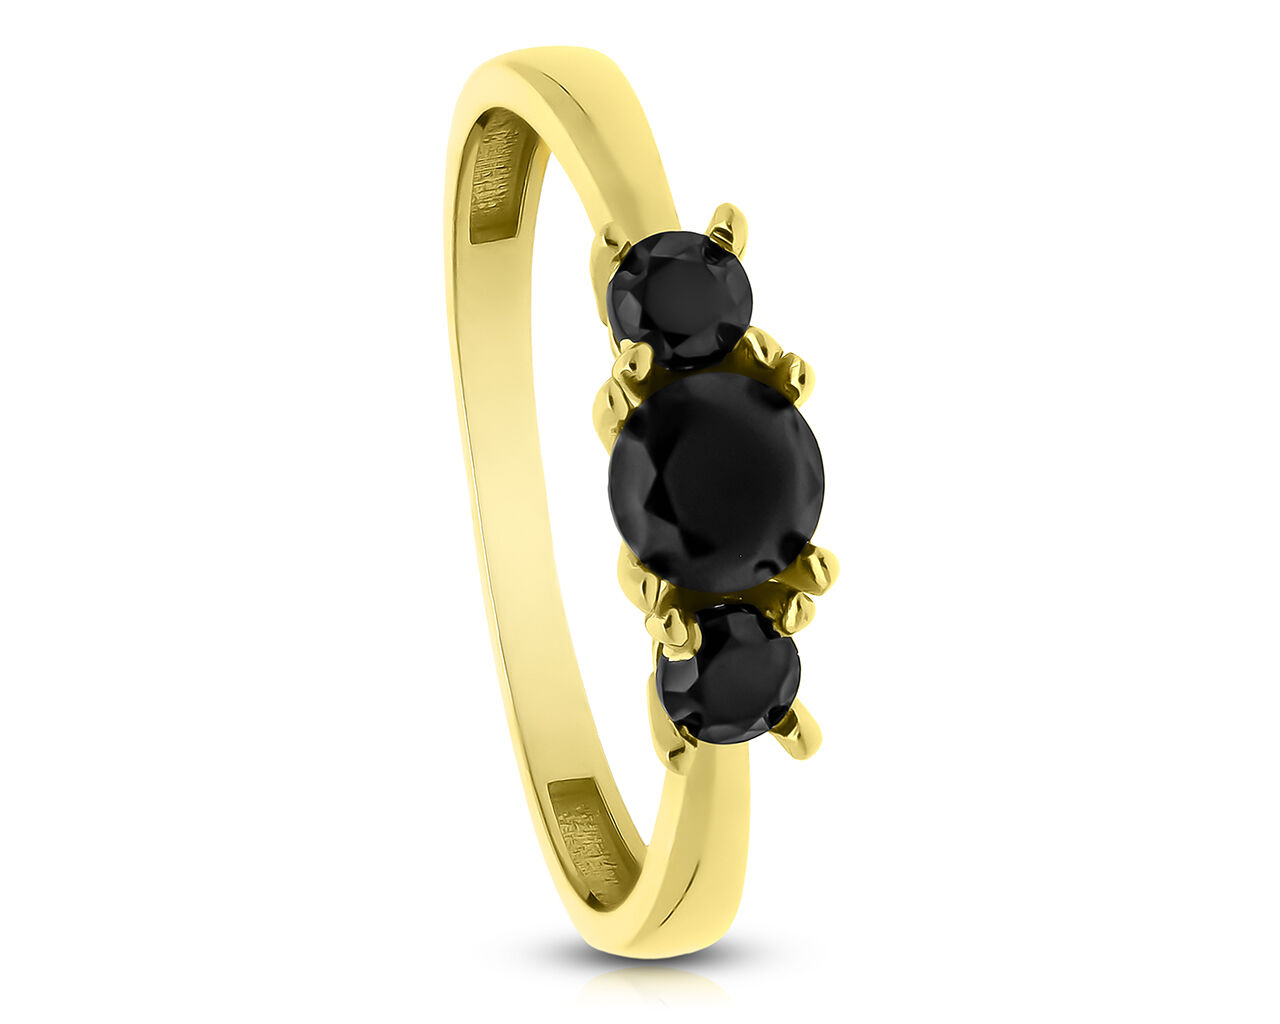 Złoty pierścionek ozdobiony czarnymi cyrkoniami